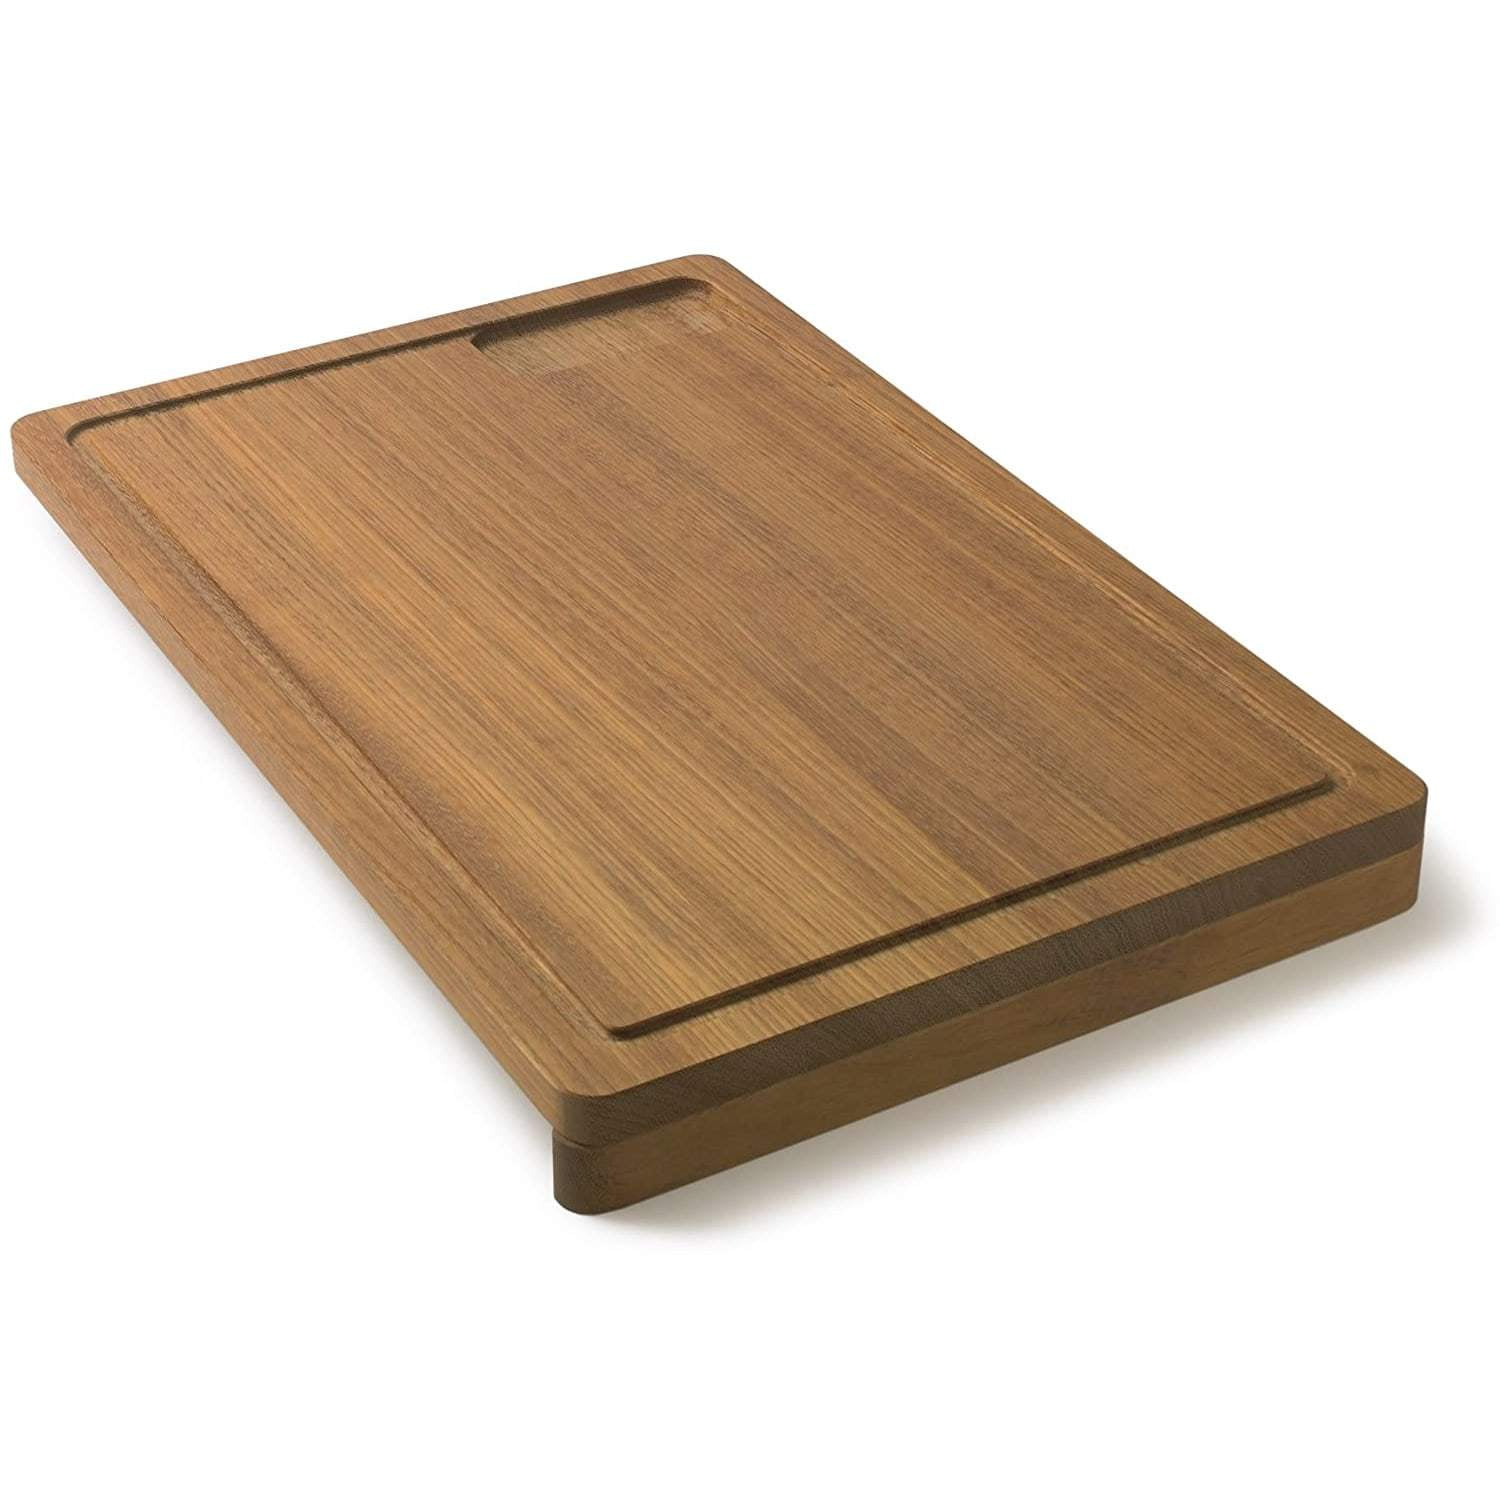 SMÅÄTA Cutting board, acacia, 11x8 ¾ - IKEA